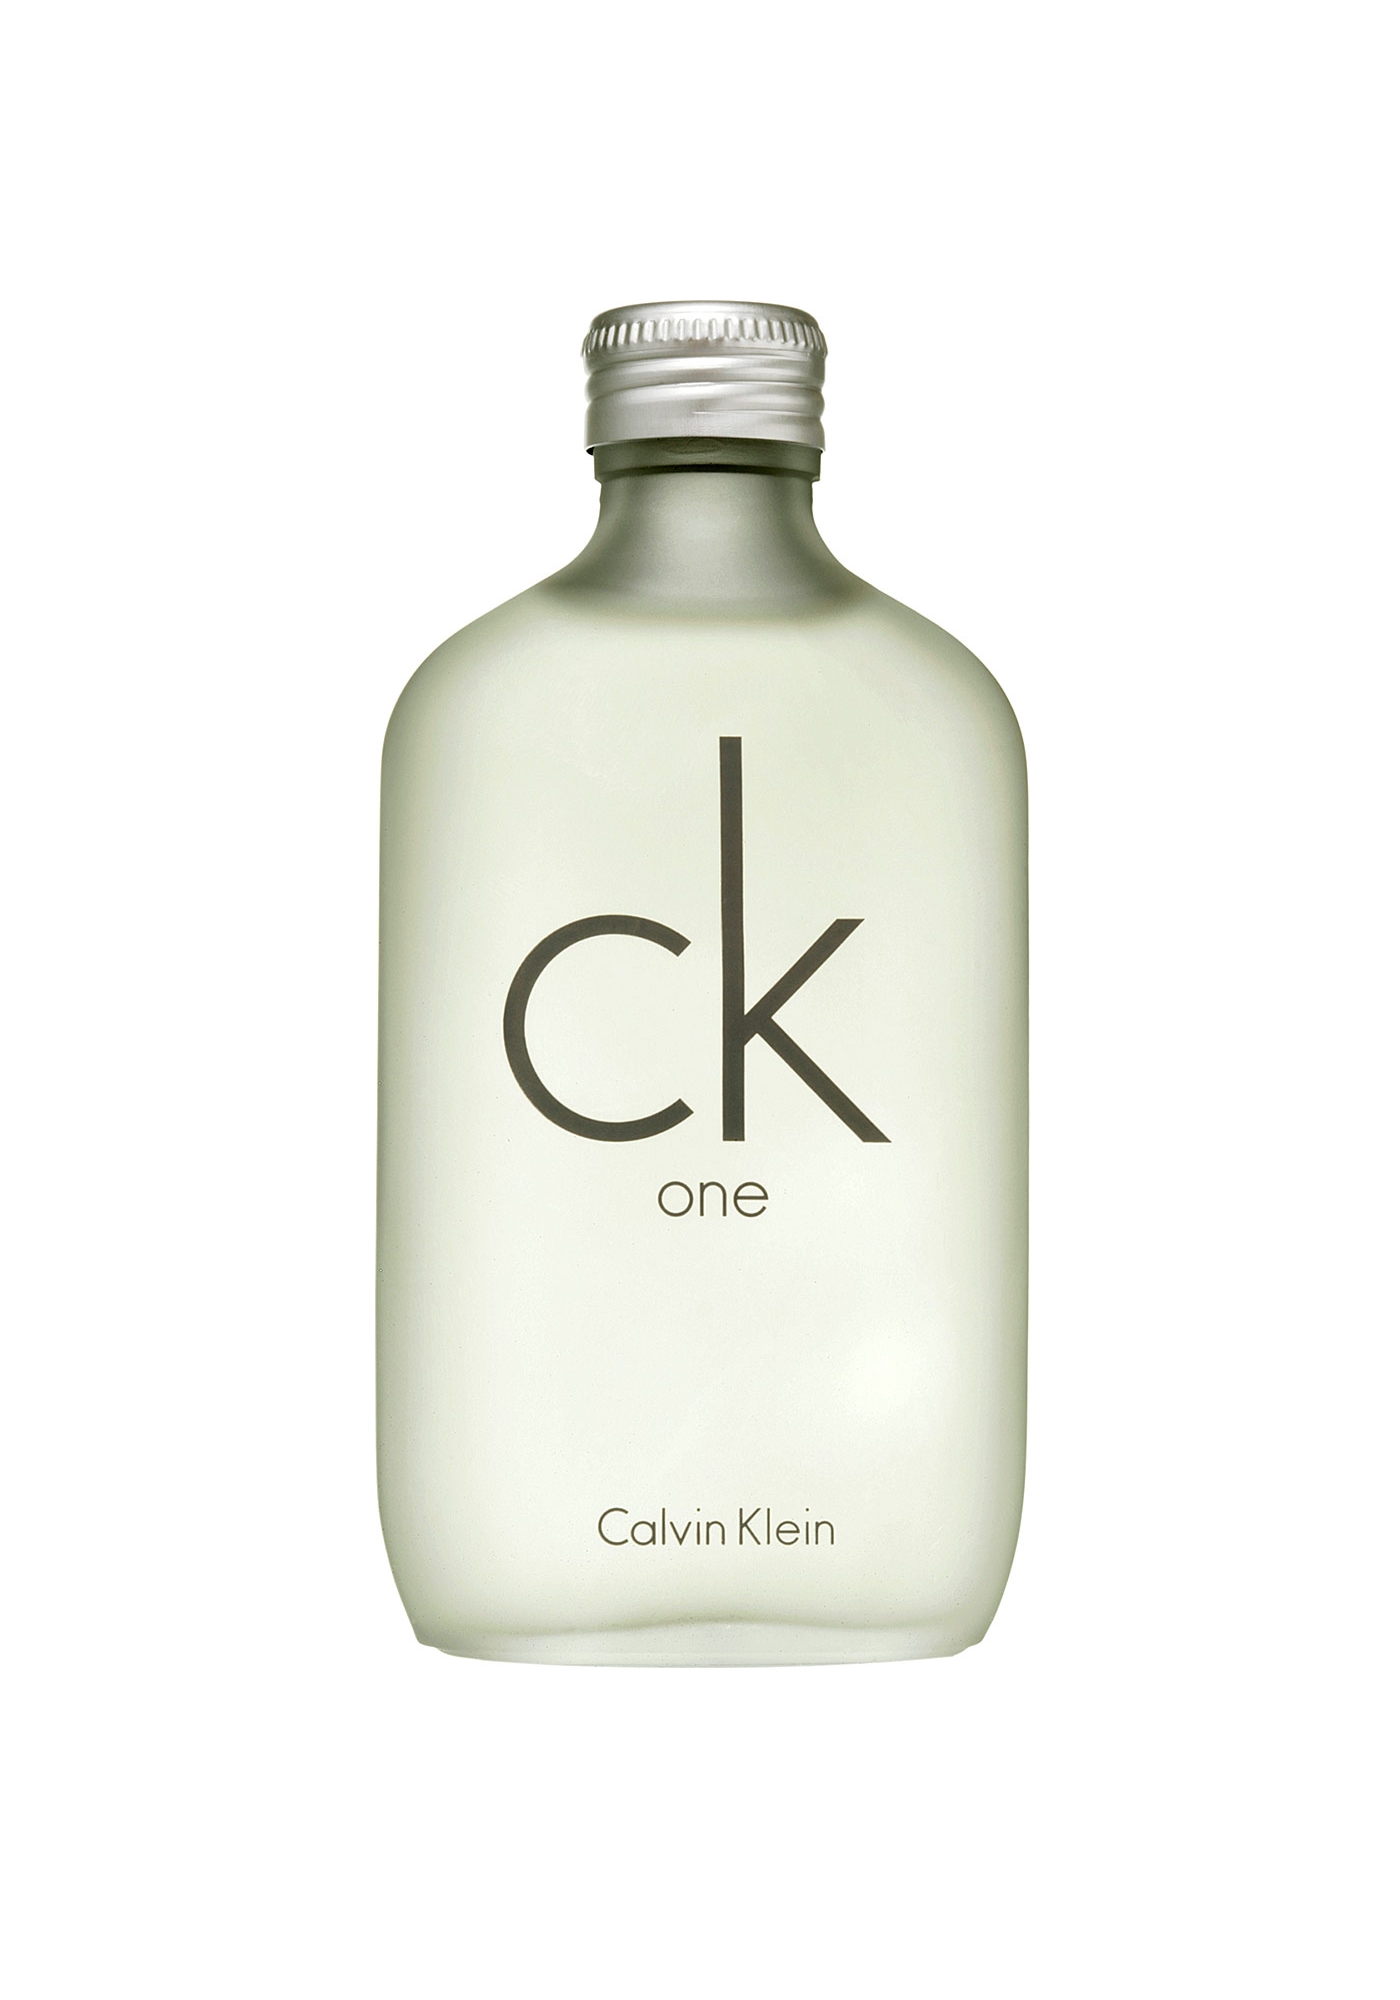 Blazen Perth Blackborough Mauve Heren Parfum, Calvin Klein "CK One", Eau de Toilette 50ml...